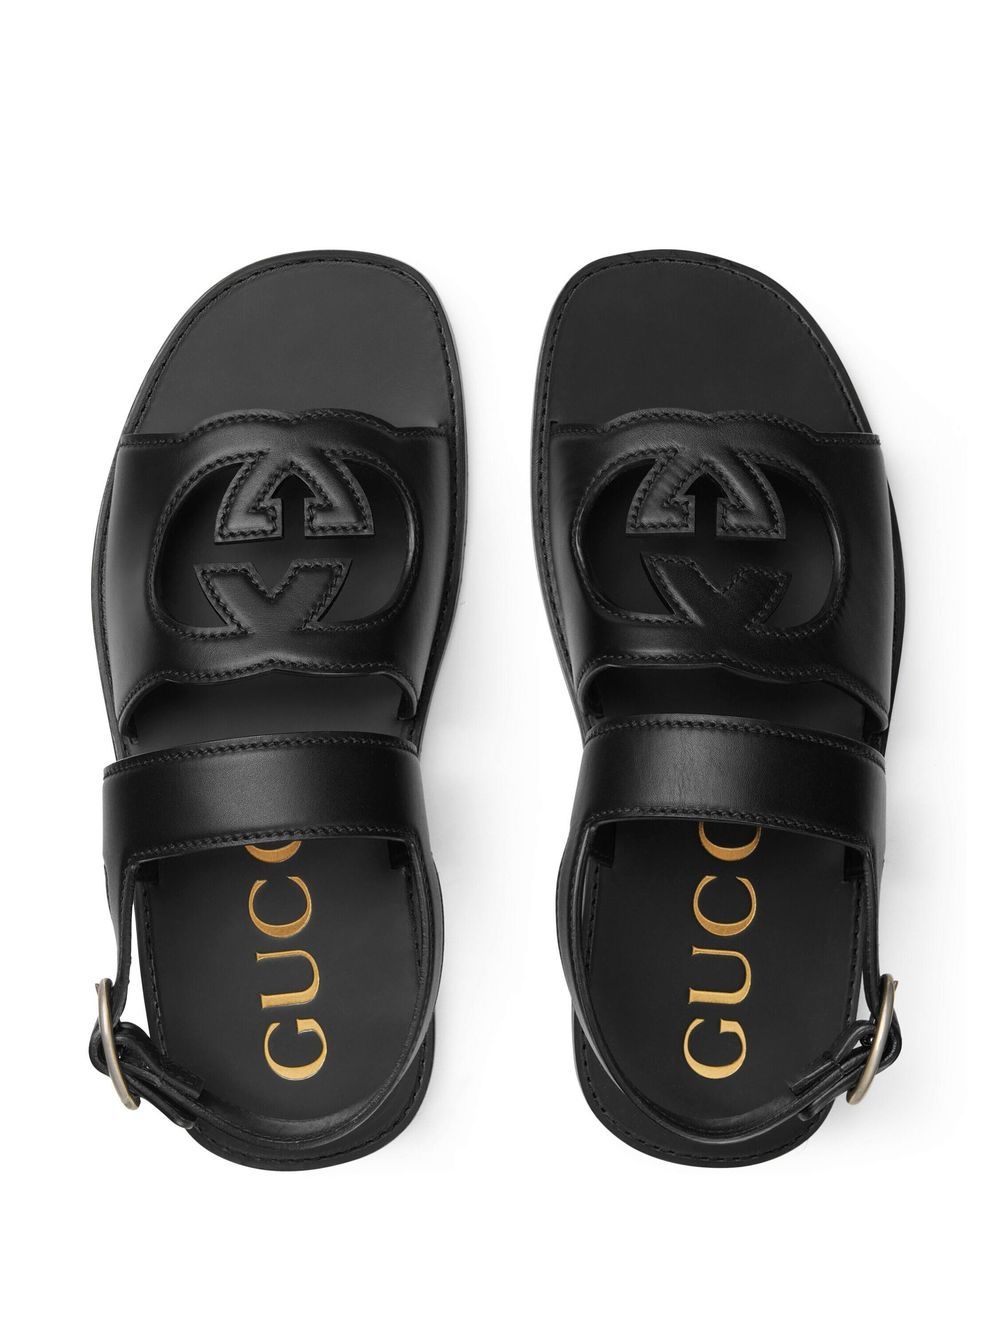 Gucci Interlocking G Sandals - Farfetch